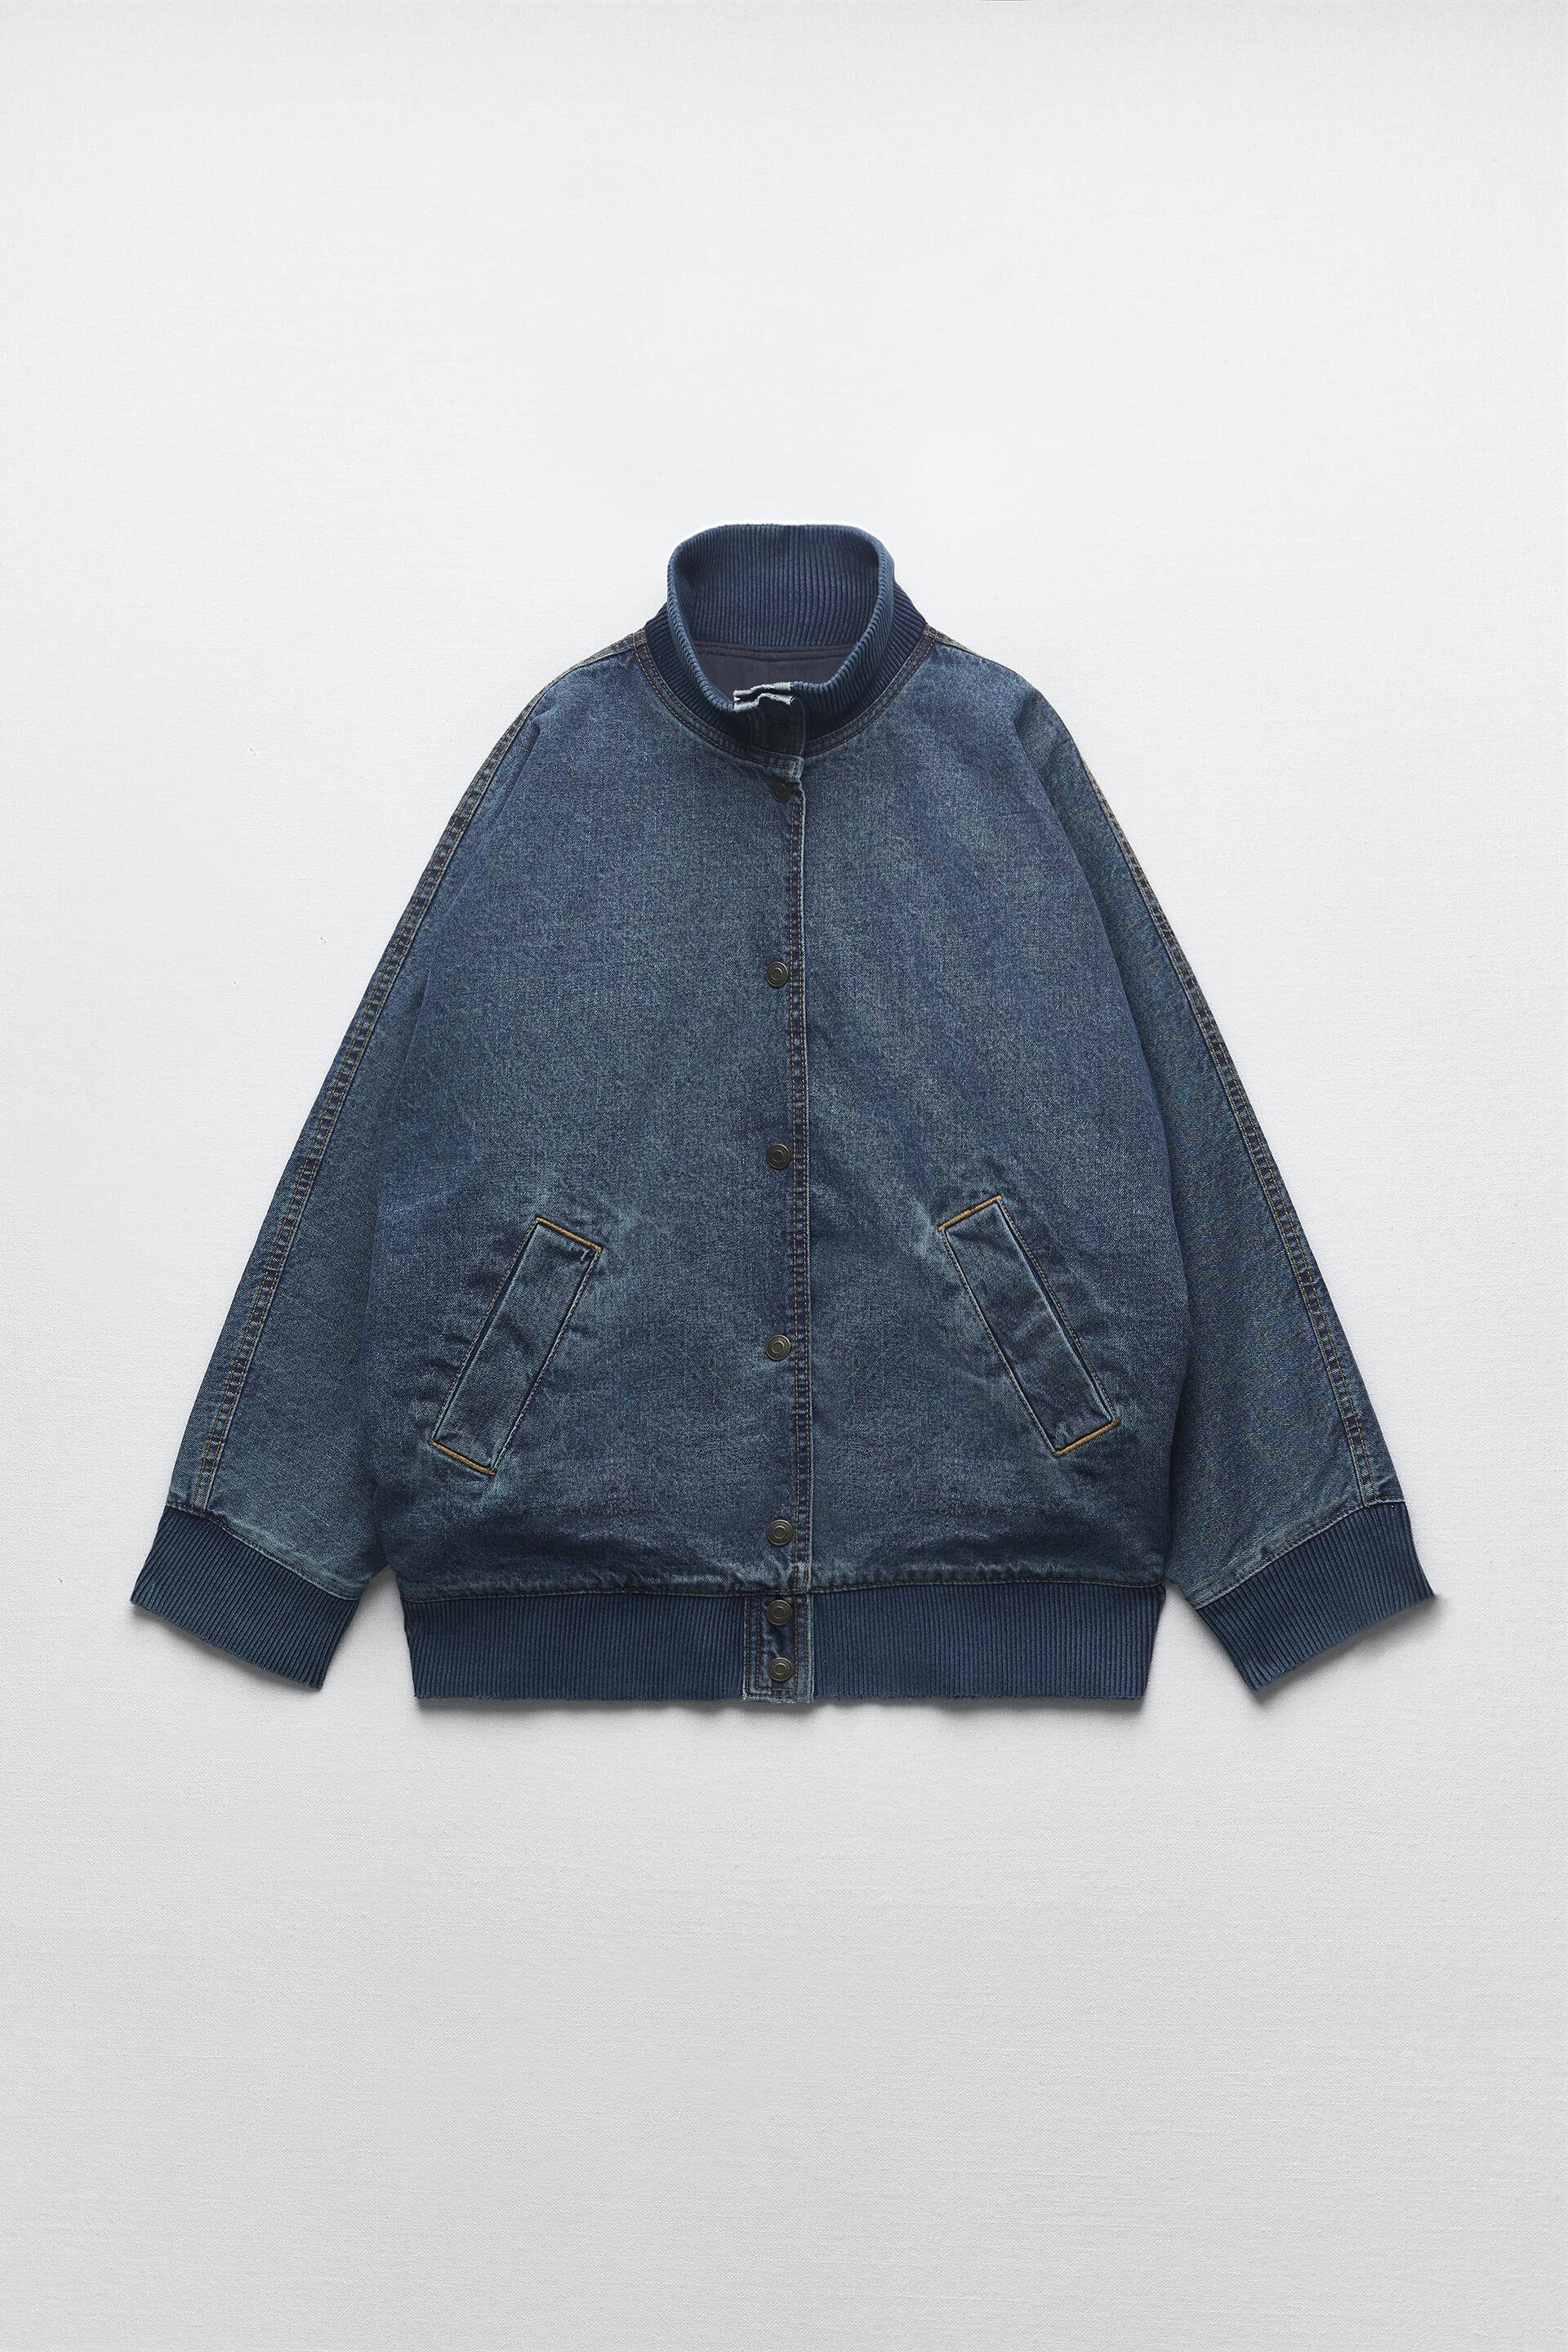 Джинсовая куртка женская ZARA 01213050 синяя XS (доставка из-за рубежа)